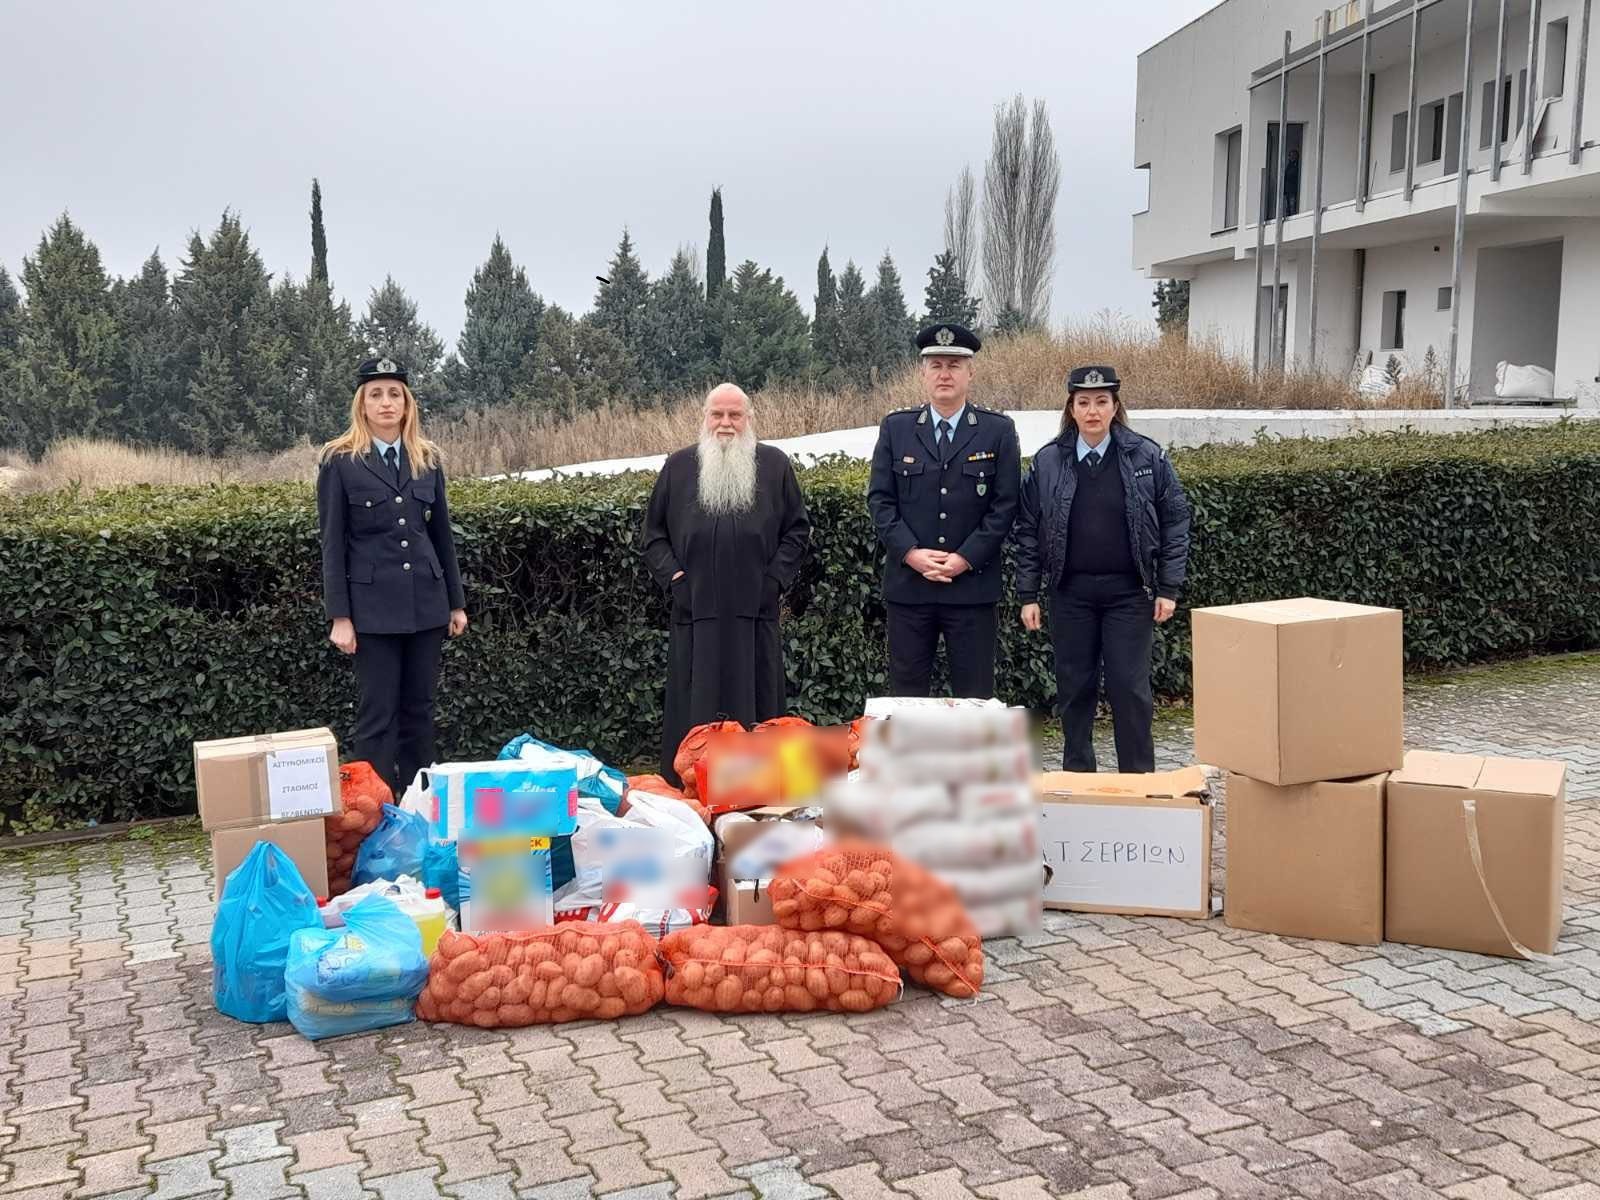 Στο πλαίσιο εορτασμού των Χριστουγέννων και του Νέου Έτους, οι Αστυνομικές Υπηρεσίες της Δυτικής Μακεδονίας συγκέντρωσαν εθελοντικά διάφορα είδη, τα οποία προσφέρθηκαν σε Ιδρύματα και φορείς